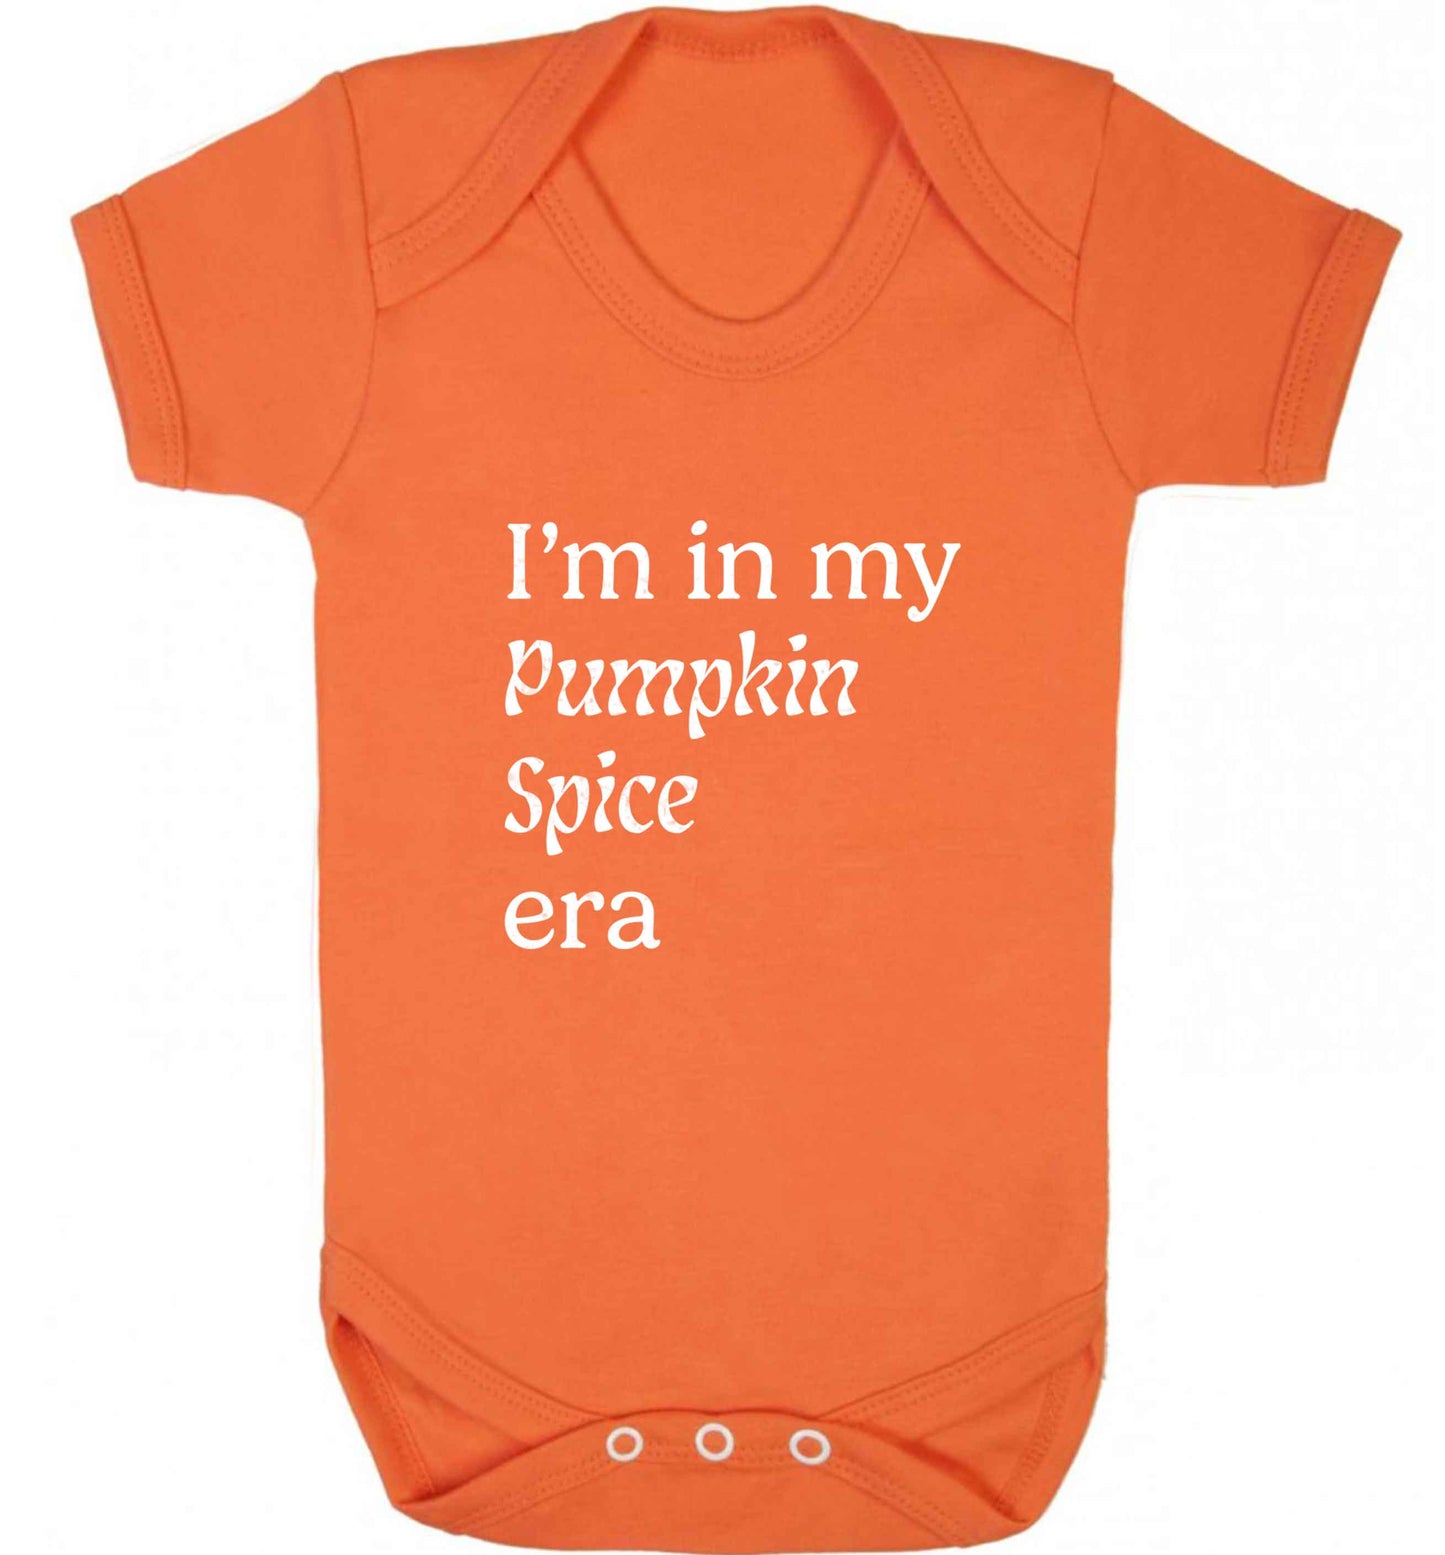 I'm in my pumpkin spice era Kit baby vest orange 18-24 months